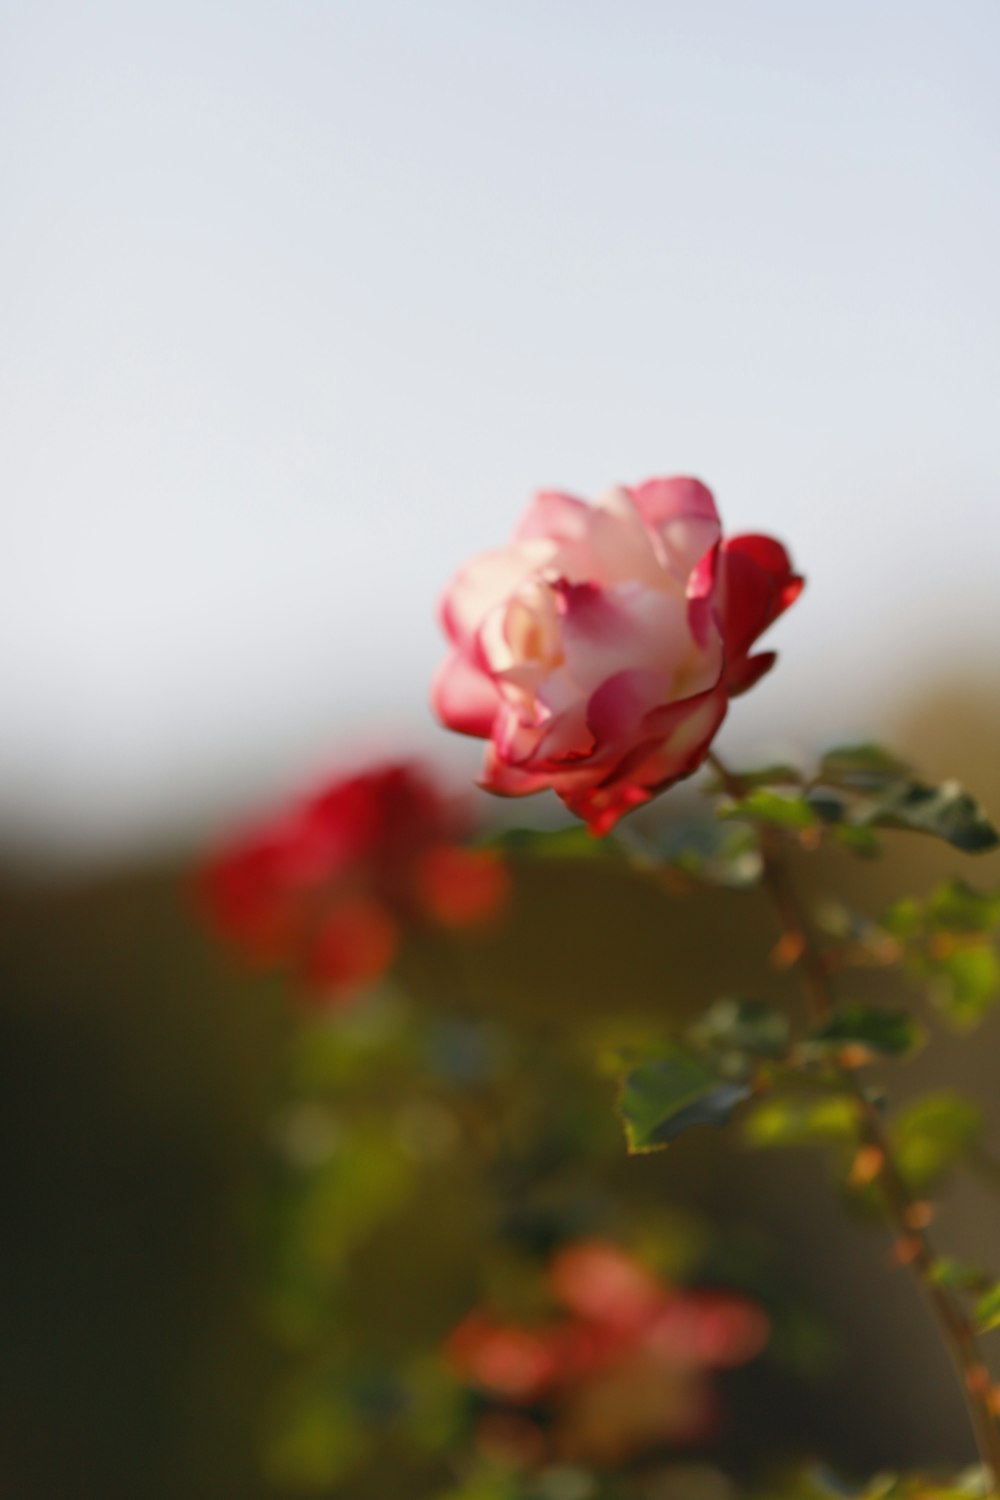 eine einzelne rosa Rose, die auf einer grünen Pflanze sitzt